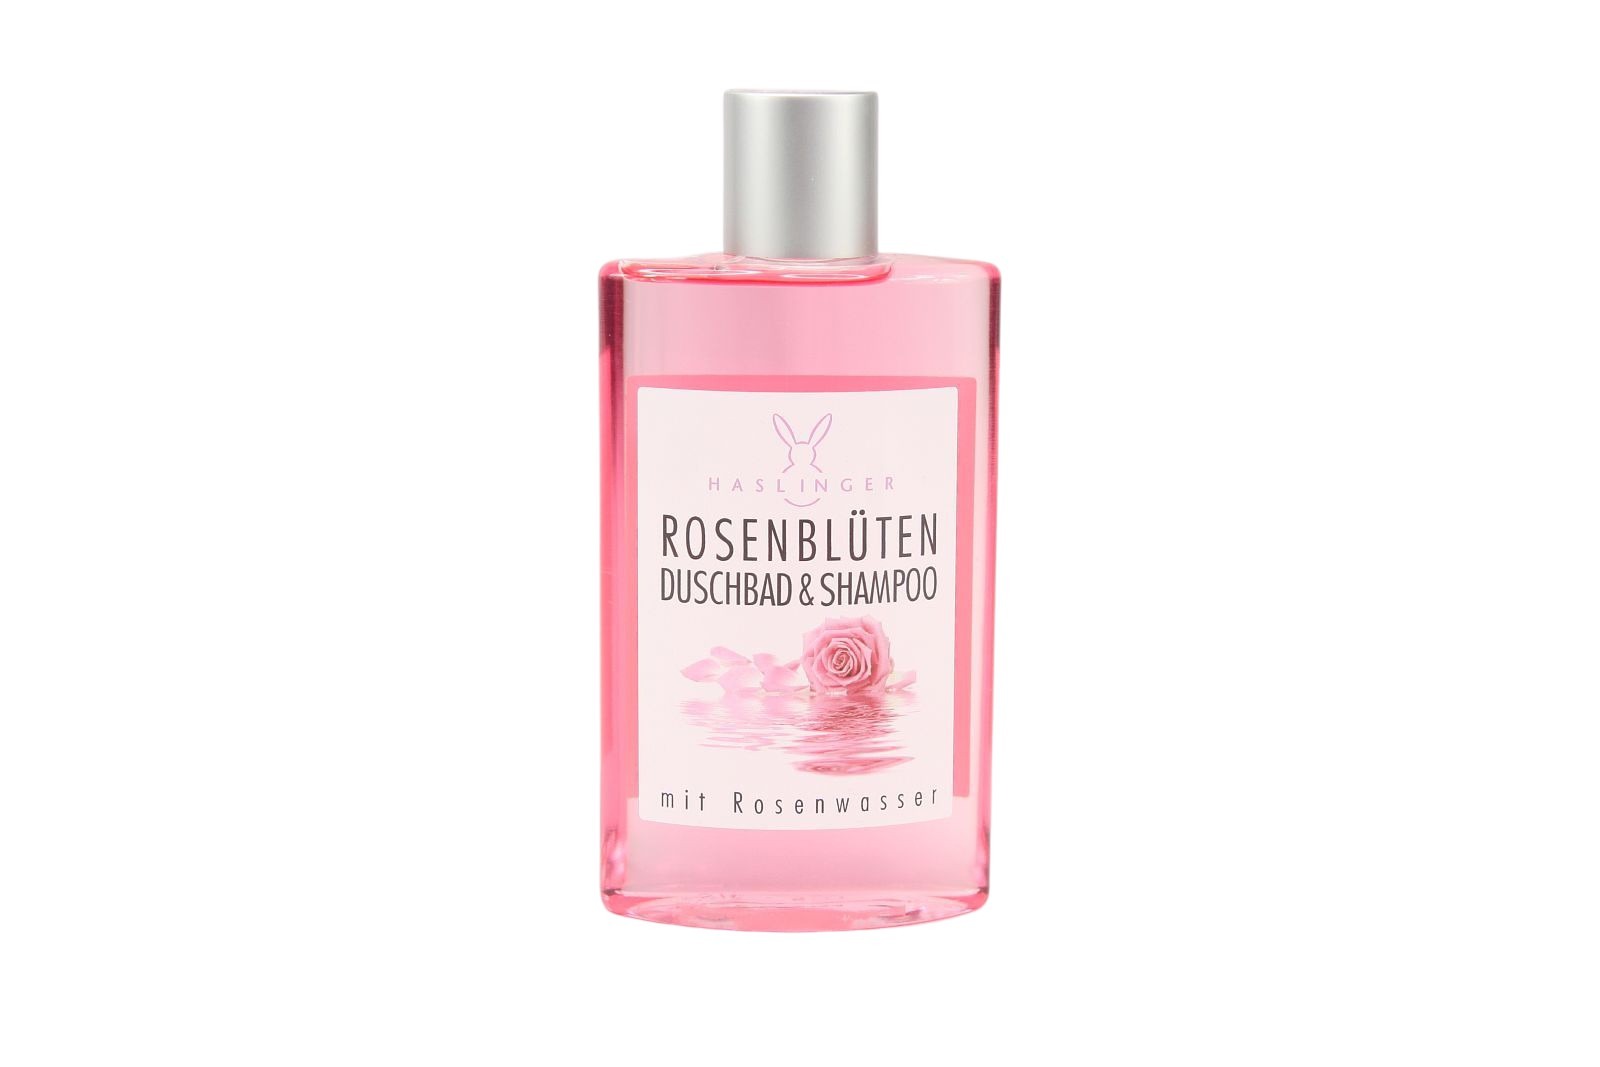 Duschbad & Shampoo Rosenblüten